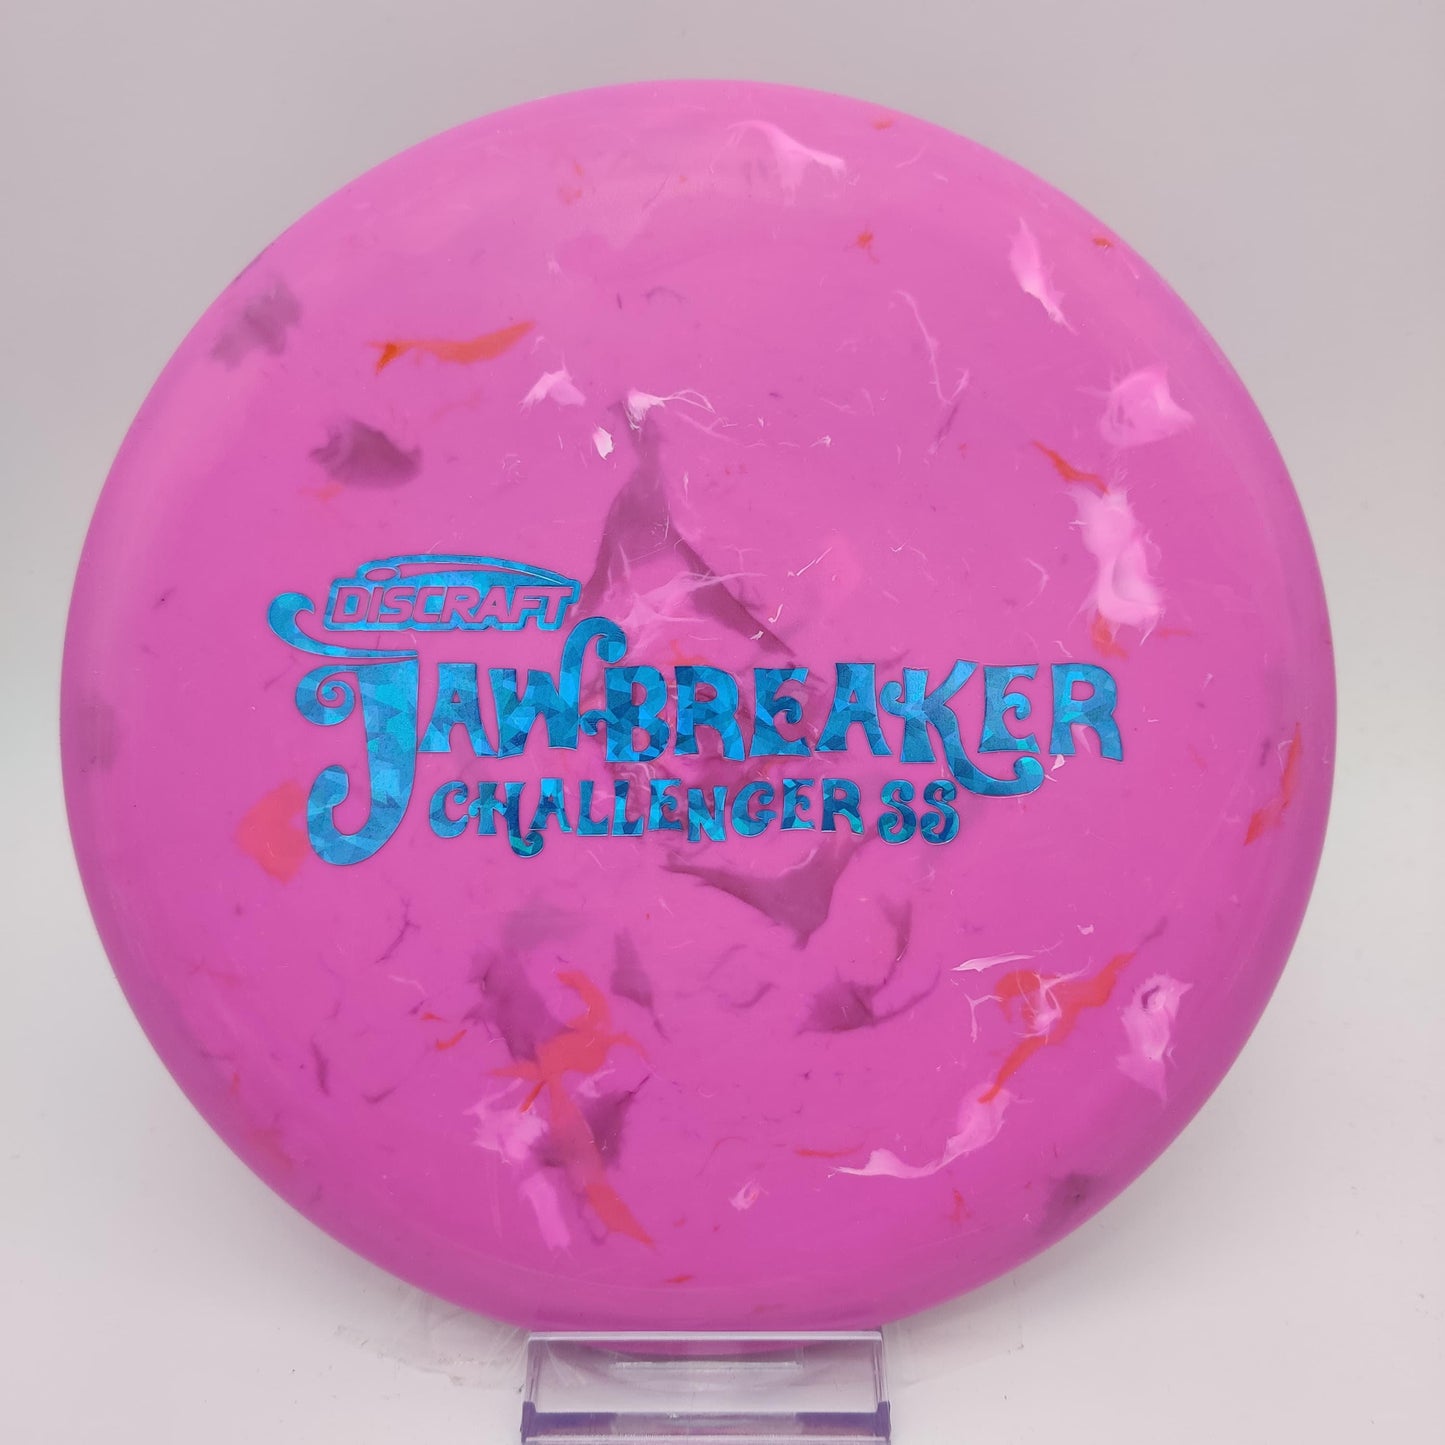 Discraft Jawbreaker Challenger SS - Disc Golf Deals USA